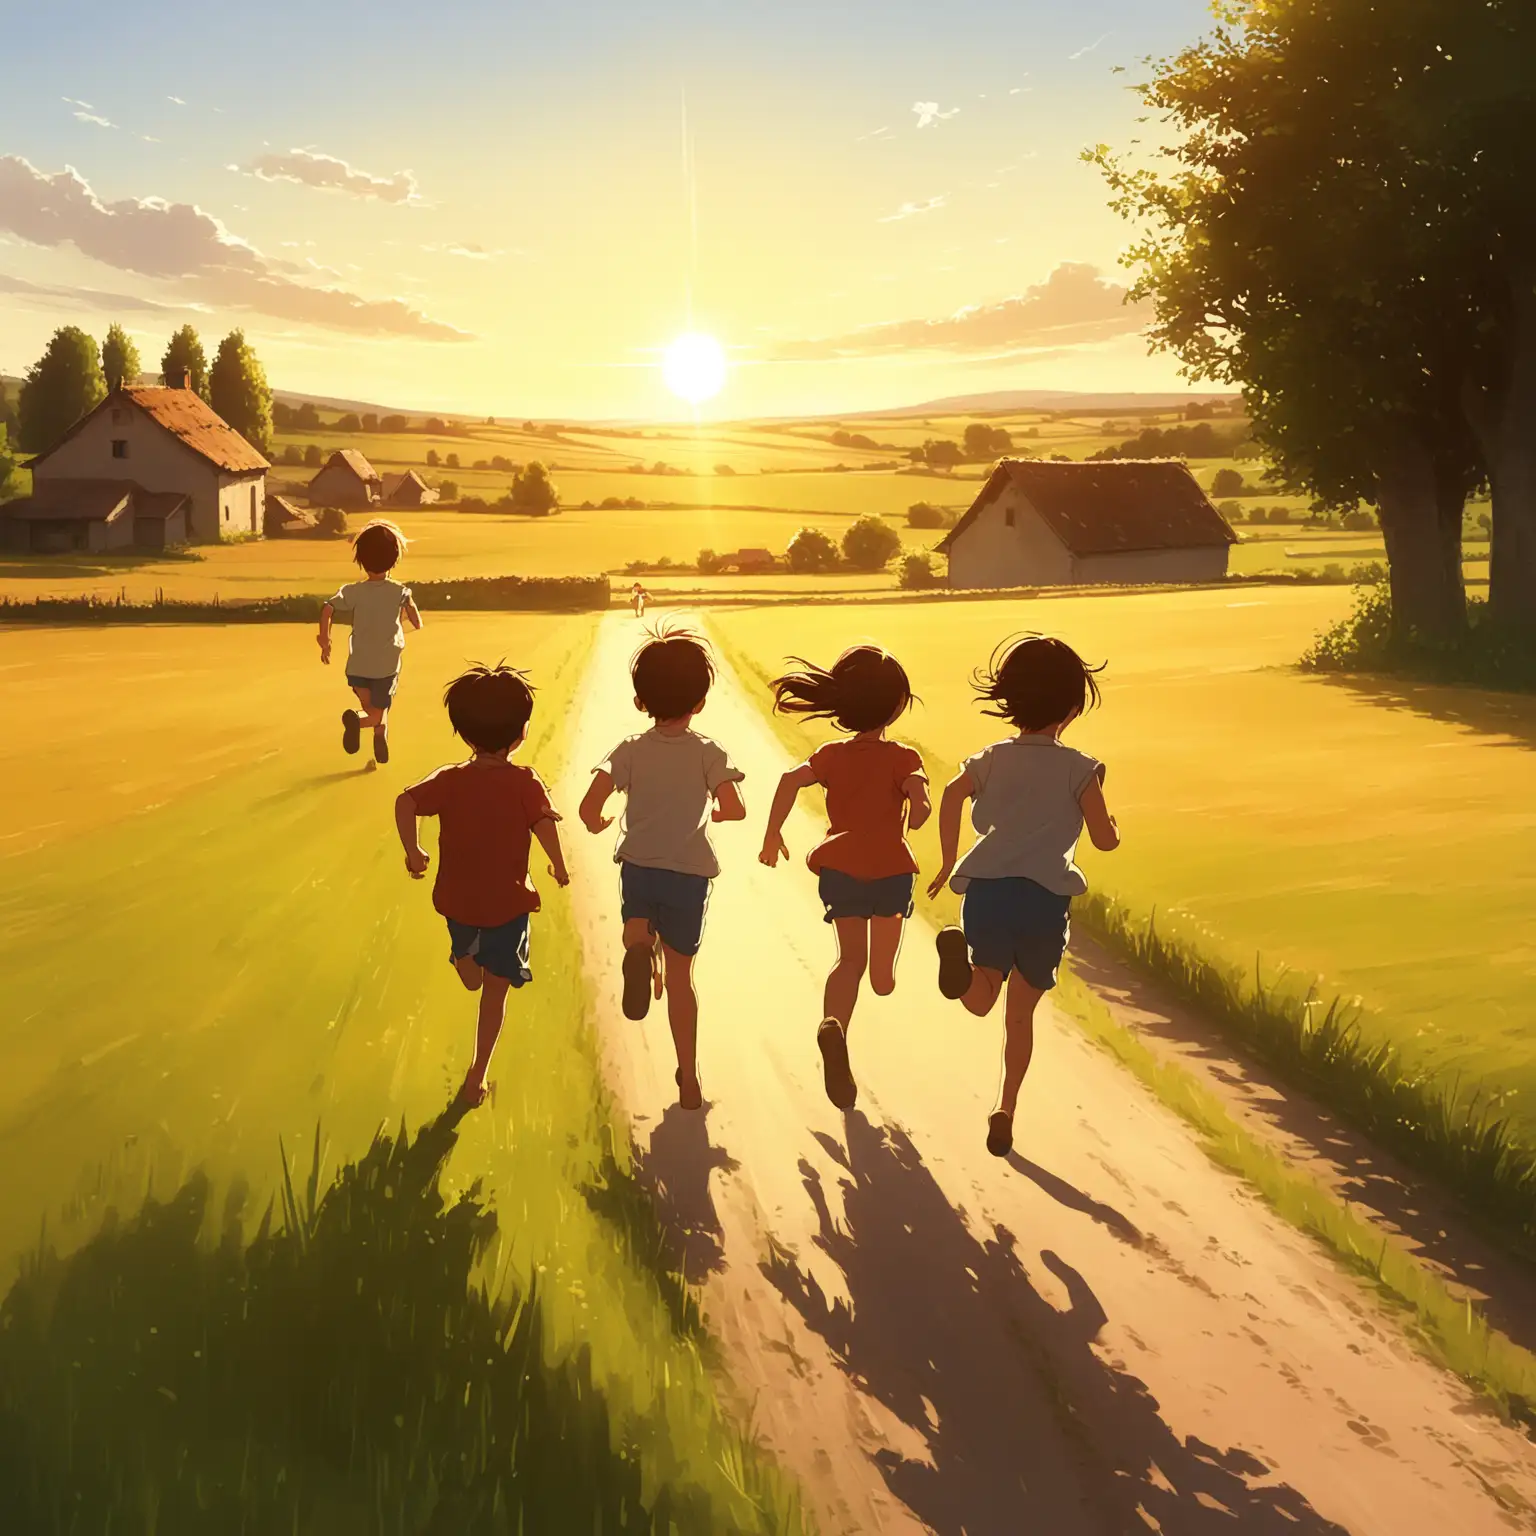 Children-Running-in-Warm-Evening-Sun-in-Rural-Countryside